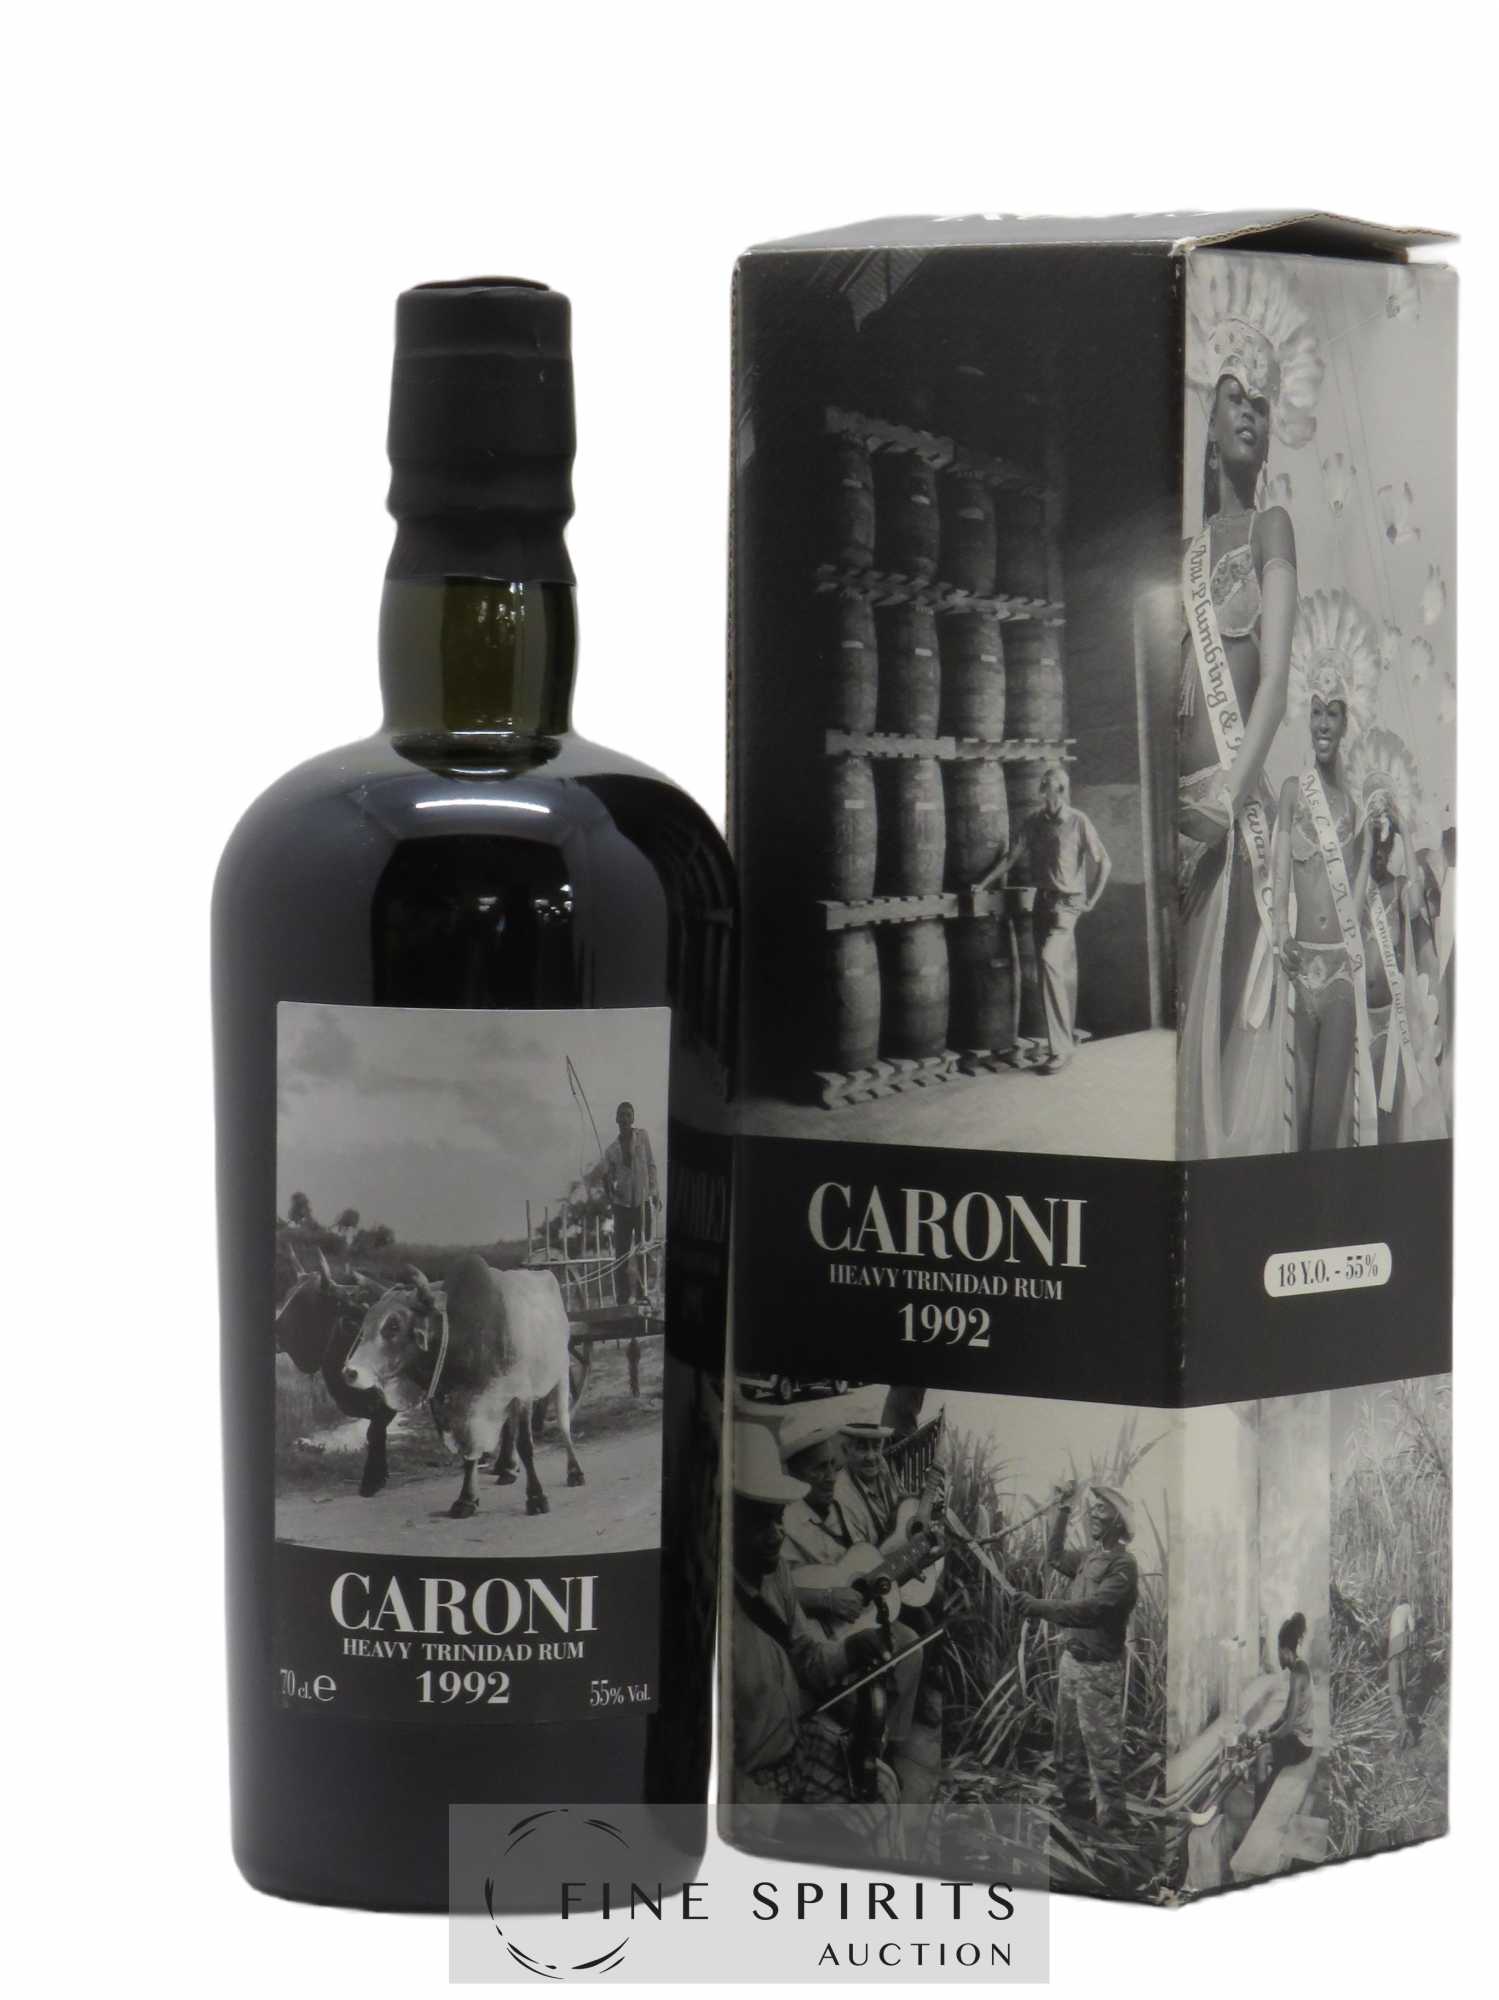 Caroni 18 years 1992 Velier Stock of 33 Casks 16236 bottles - bottled 2010